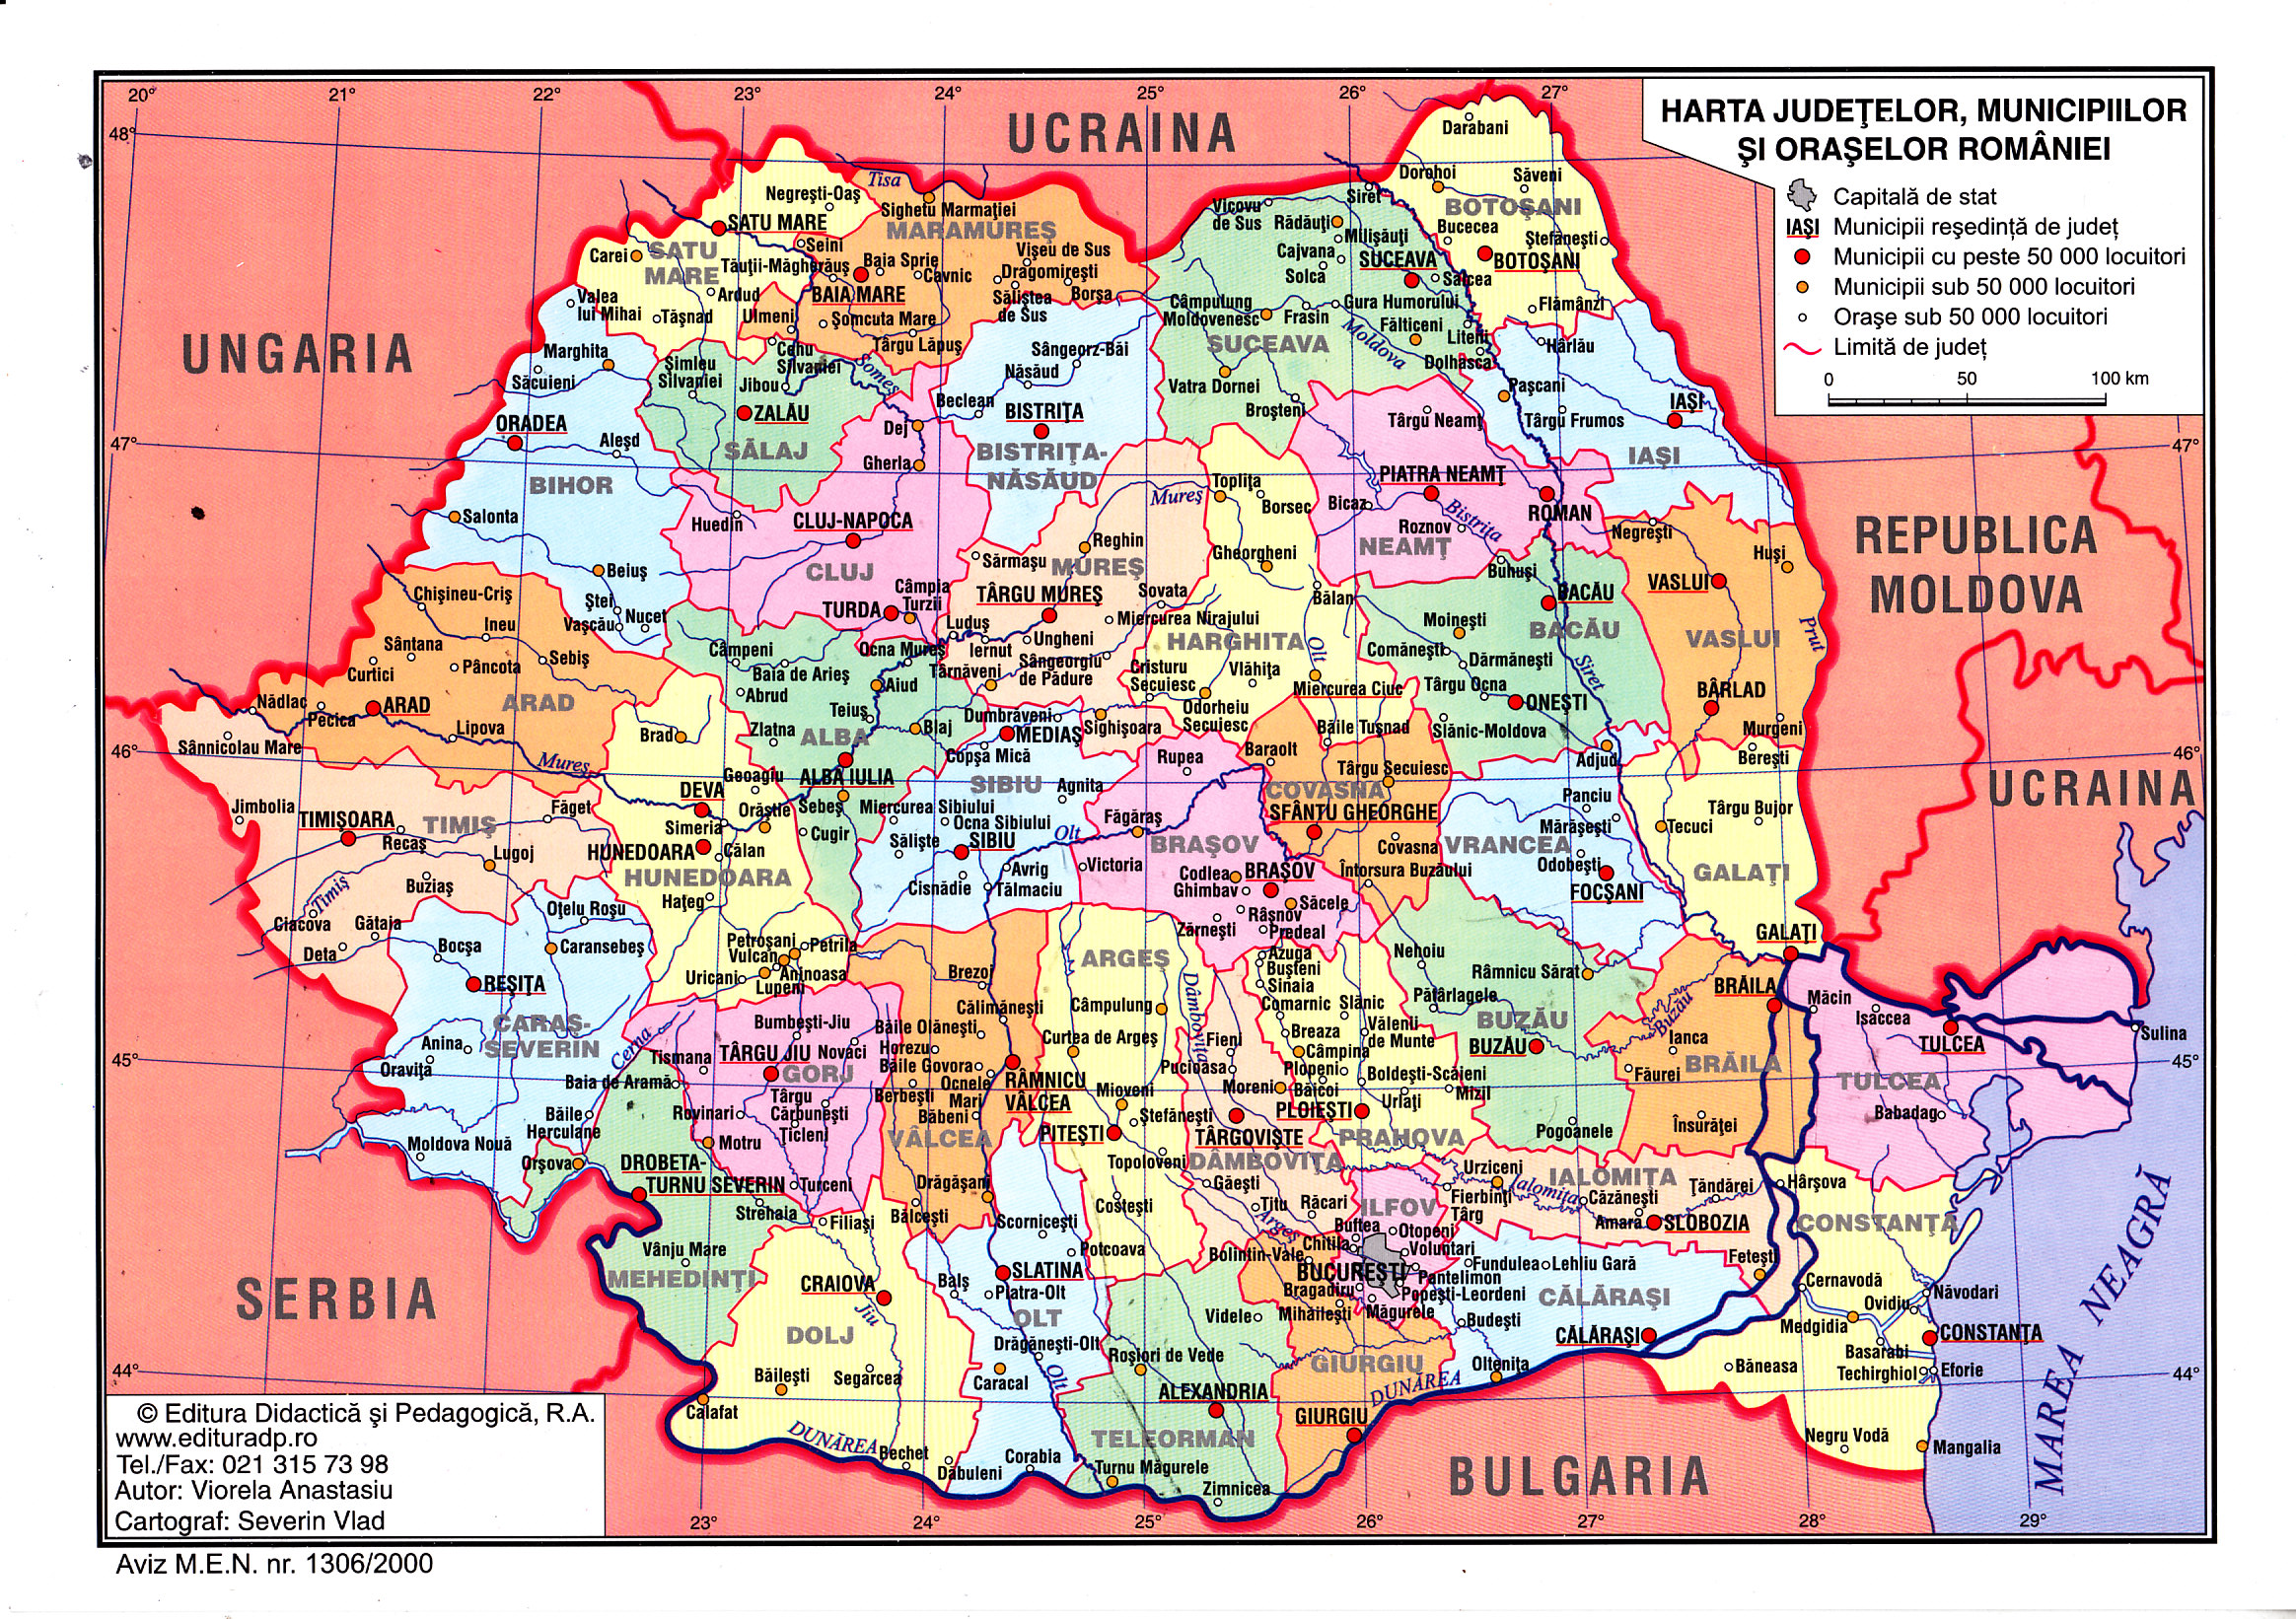 Harta Fizica a Romaniei + Harta Judetelor, Municipiilor si Oraselor Romaniei